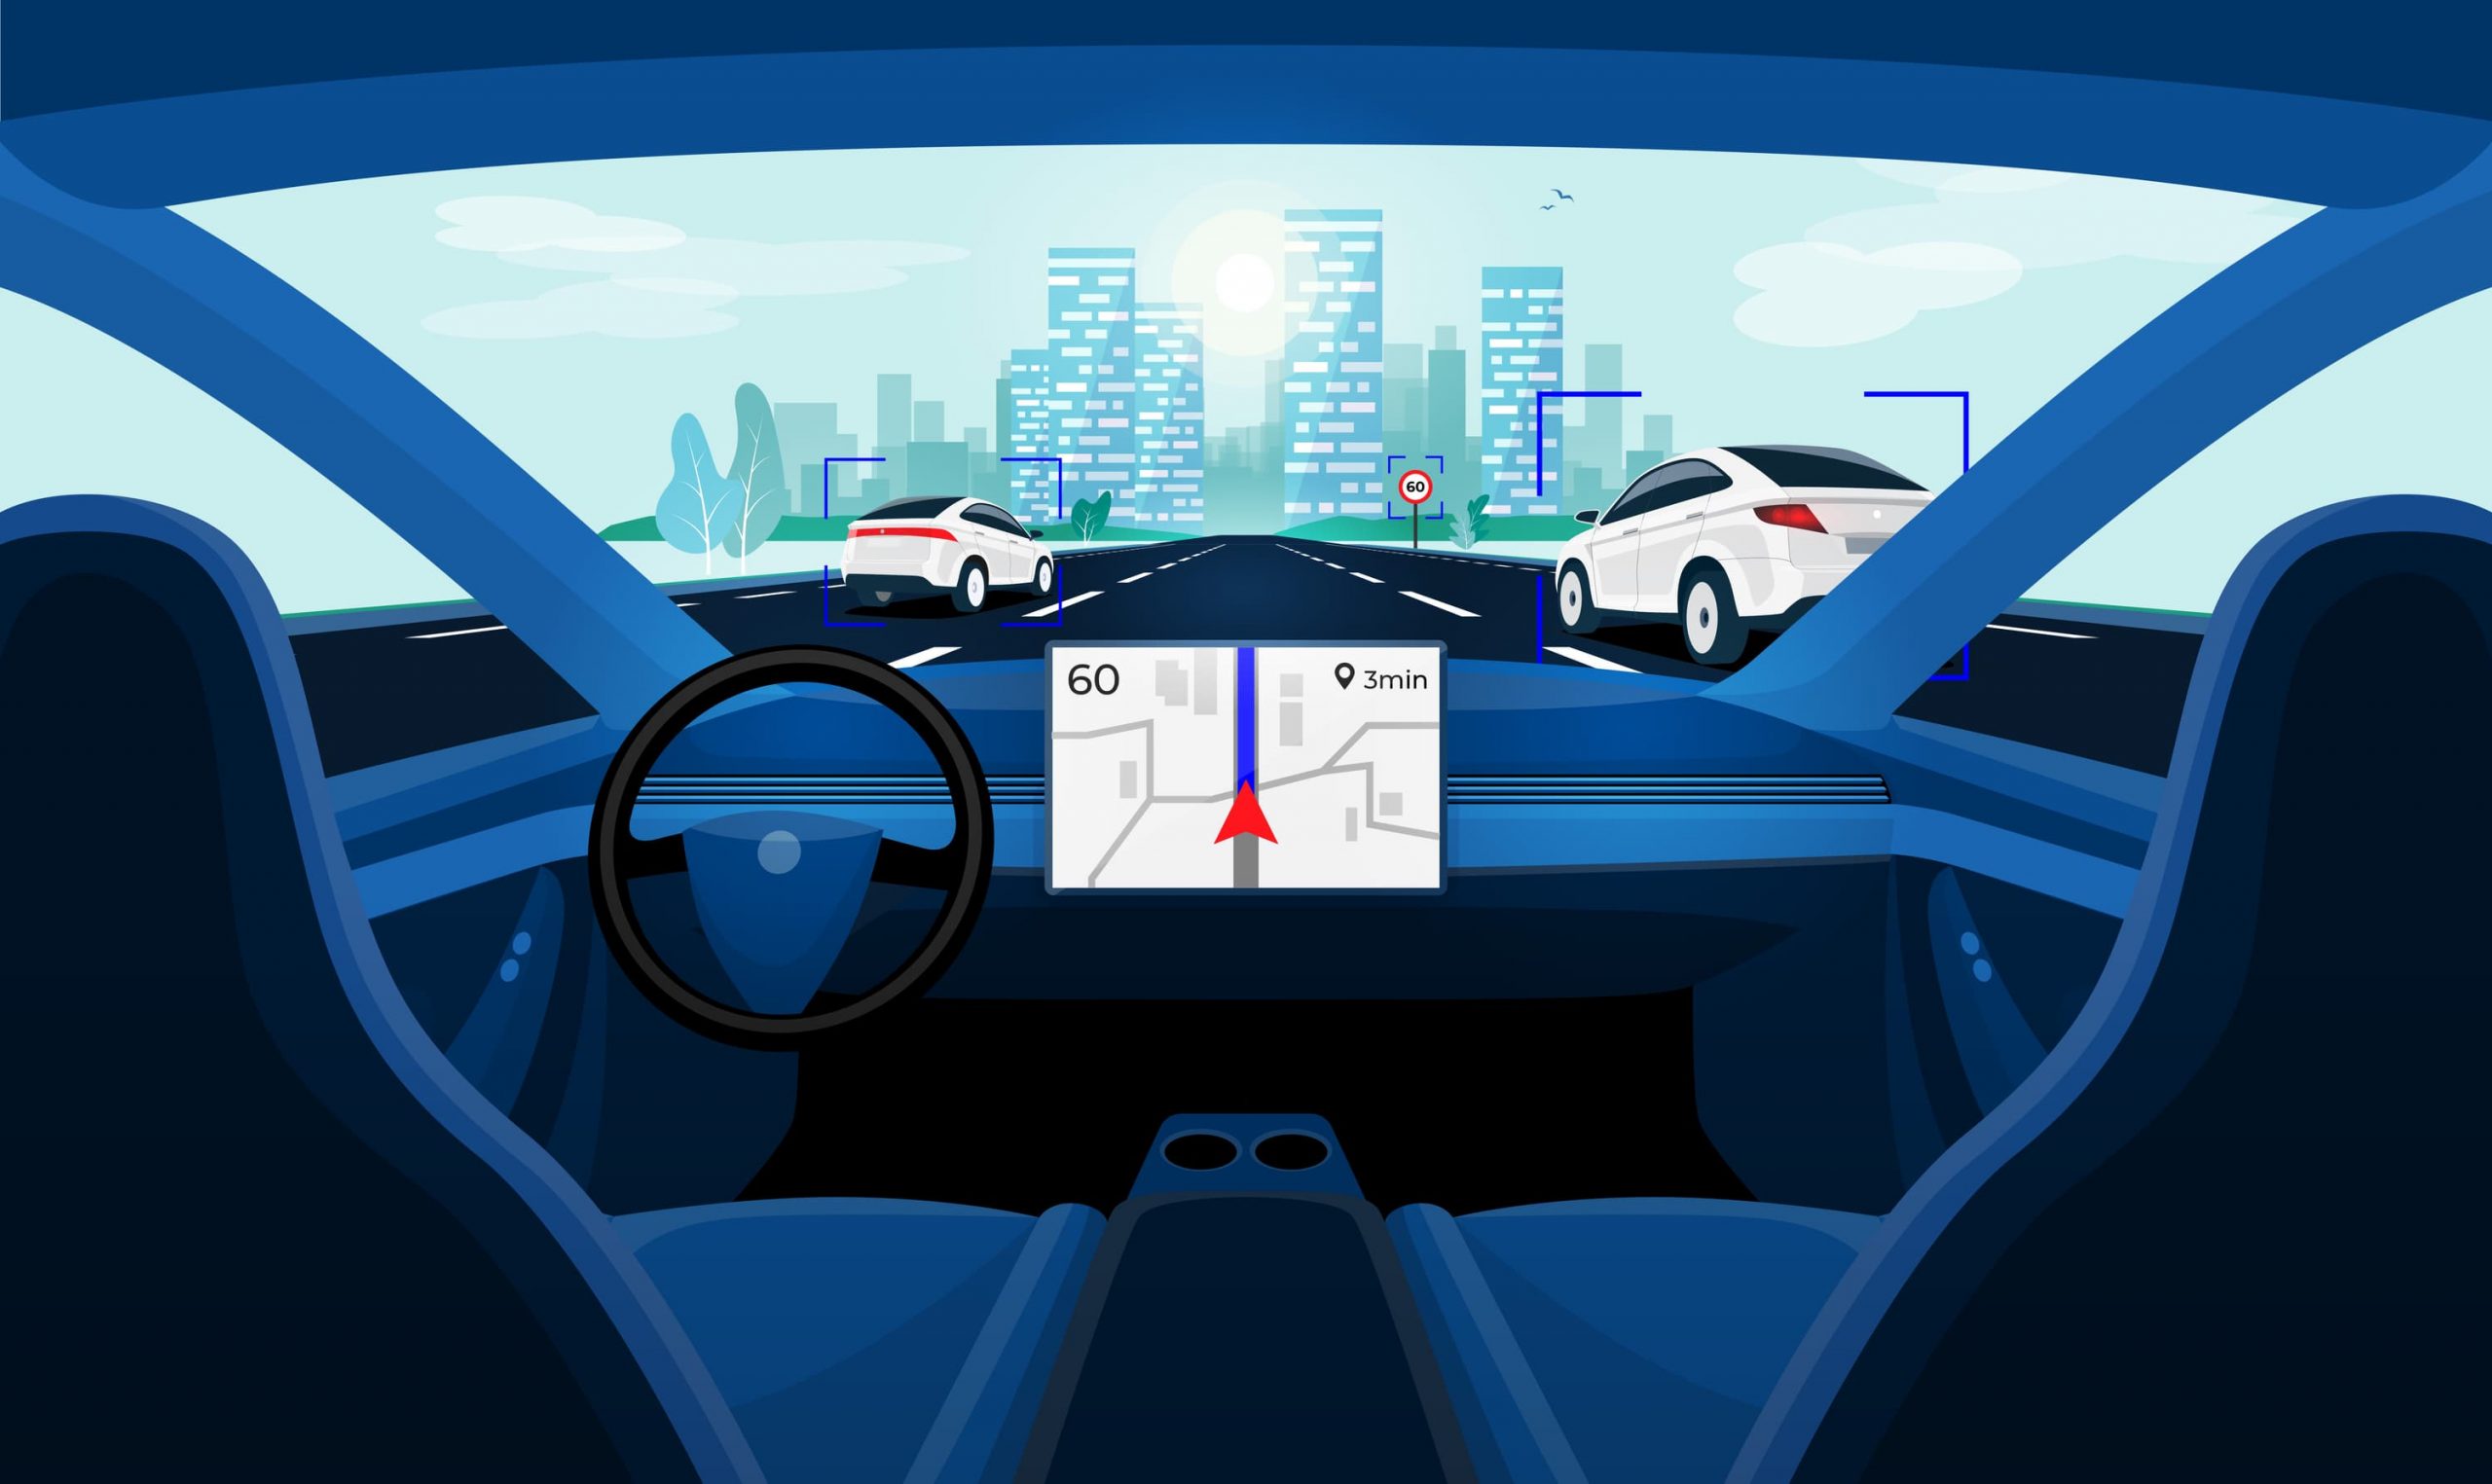 Autonomous smart driverless car